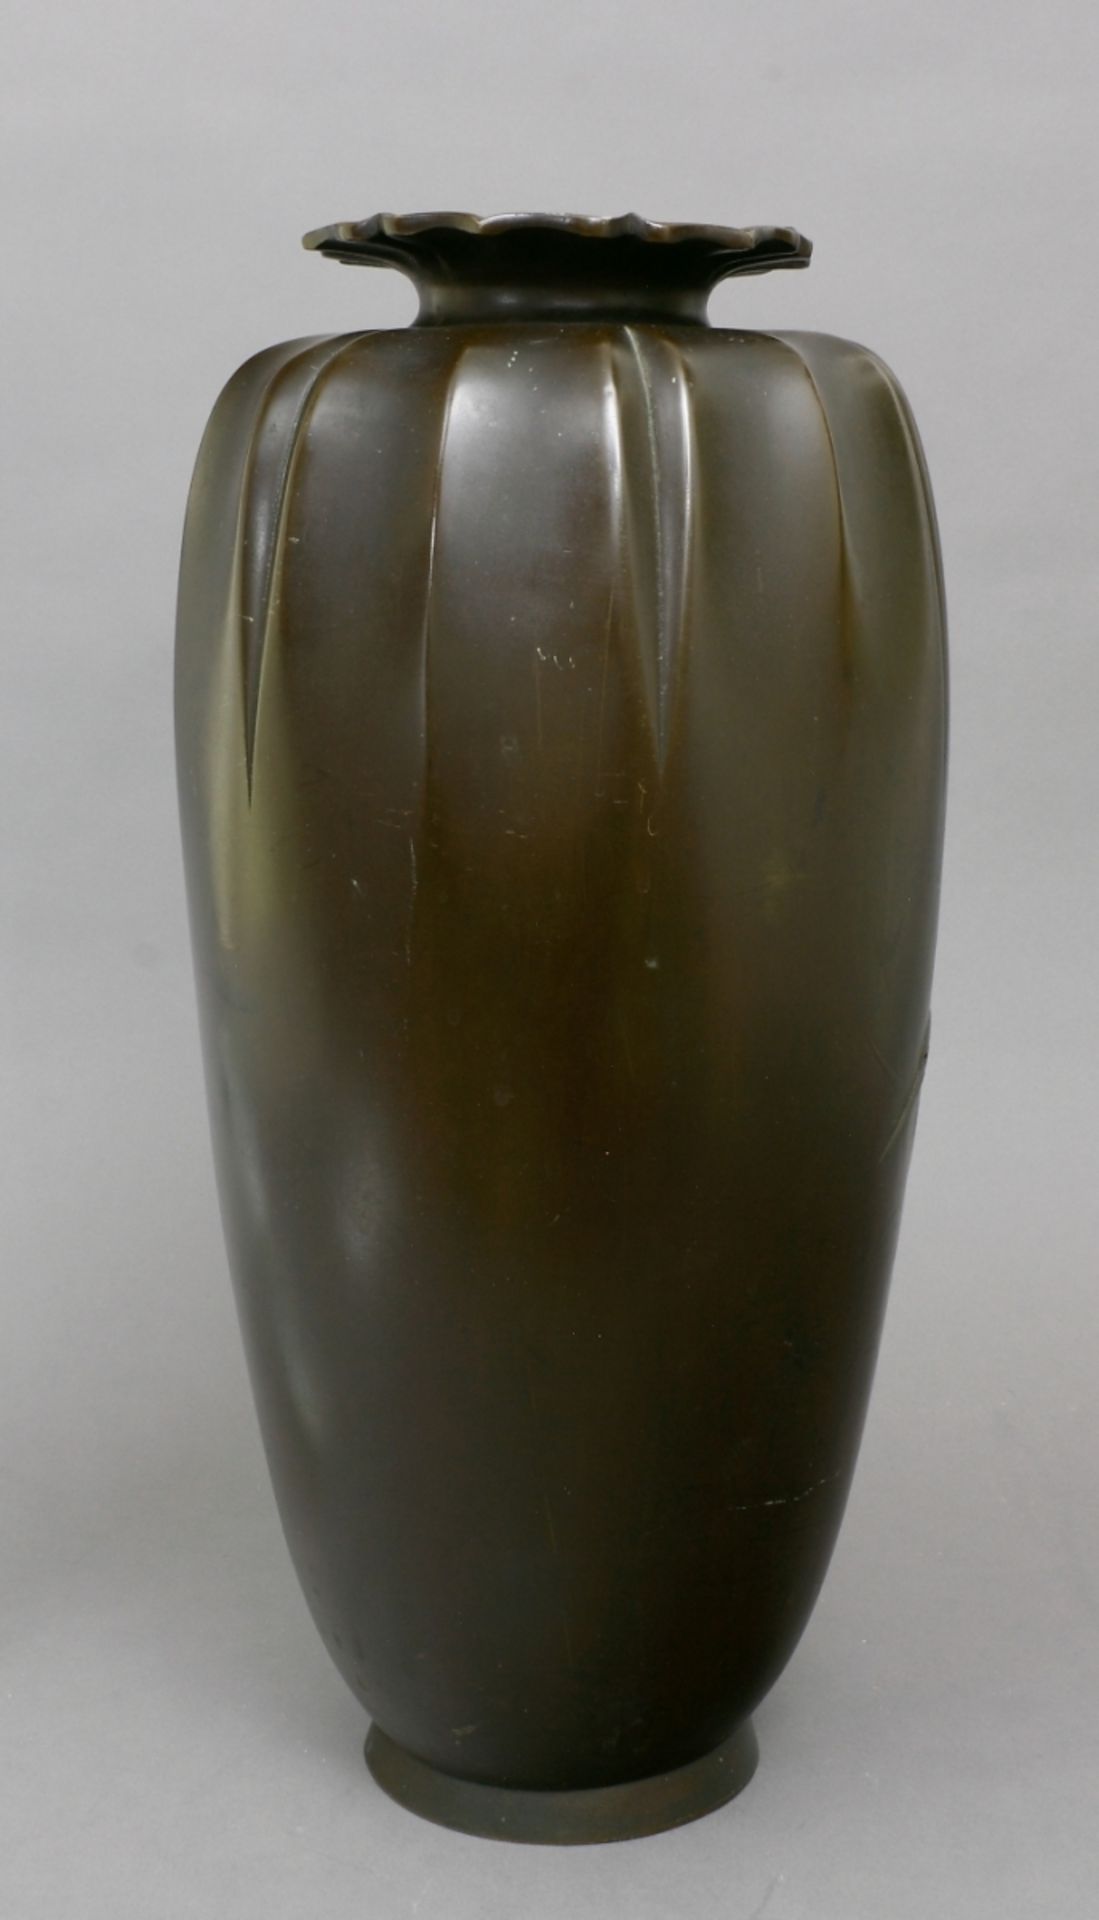 Japan, Vase, Bronze, spätes 19. Jh. - Bild 2 aus 3